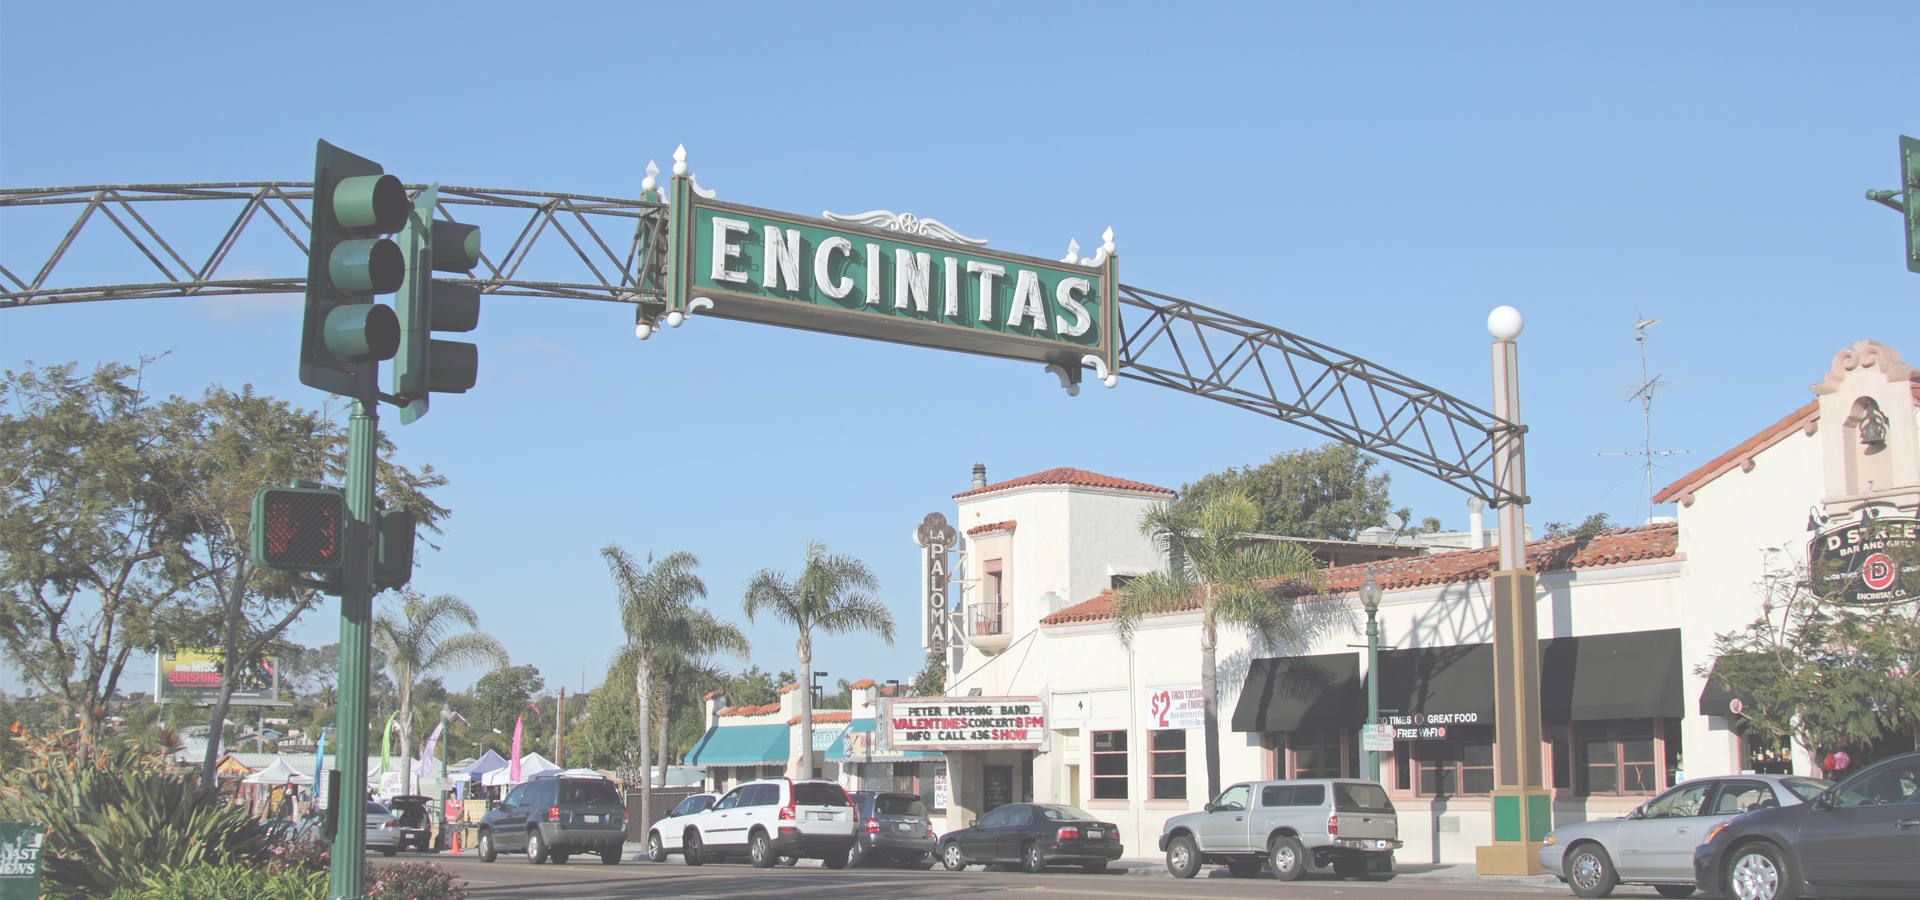 <b>Encinitas, California, United States</b>